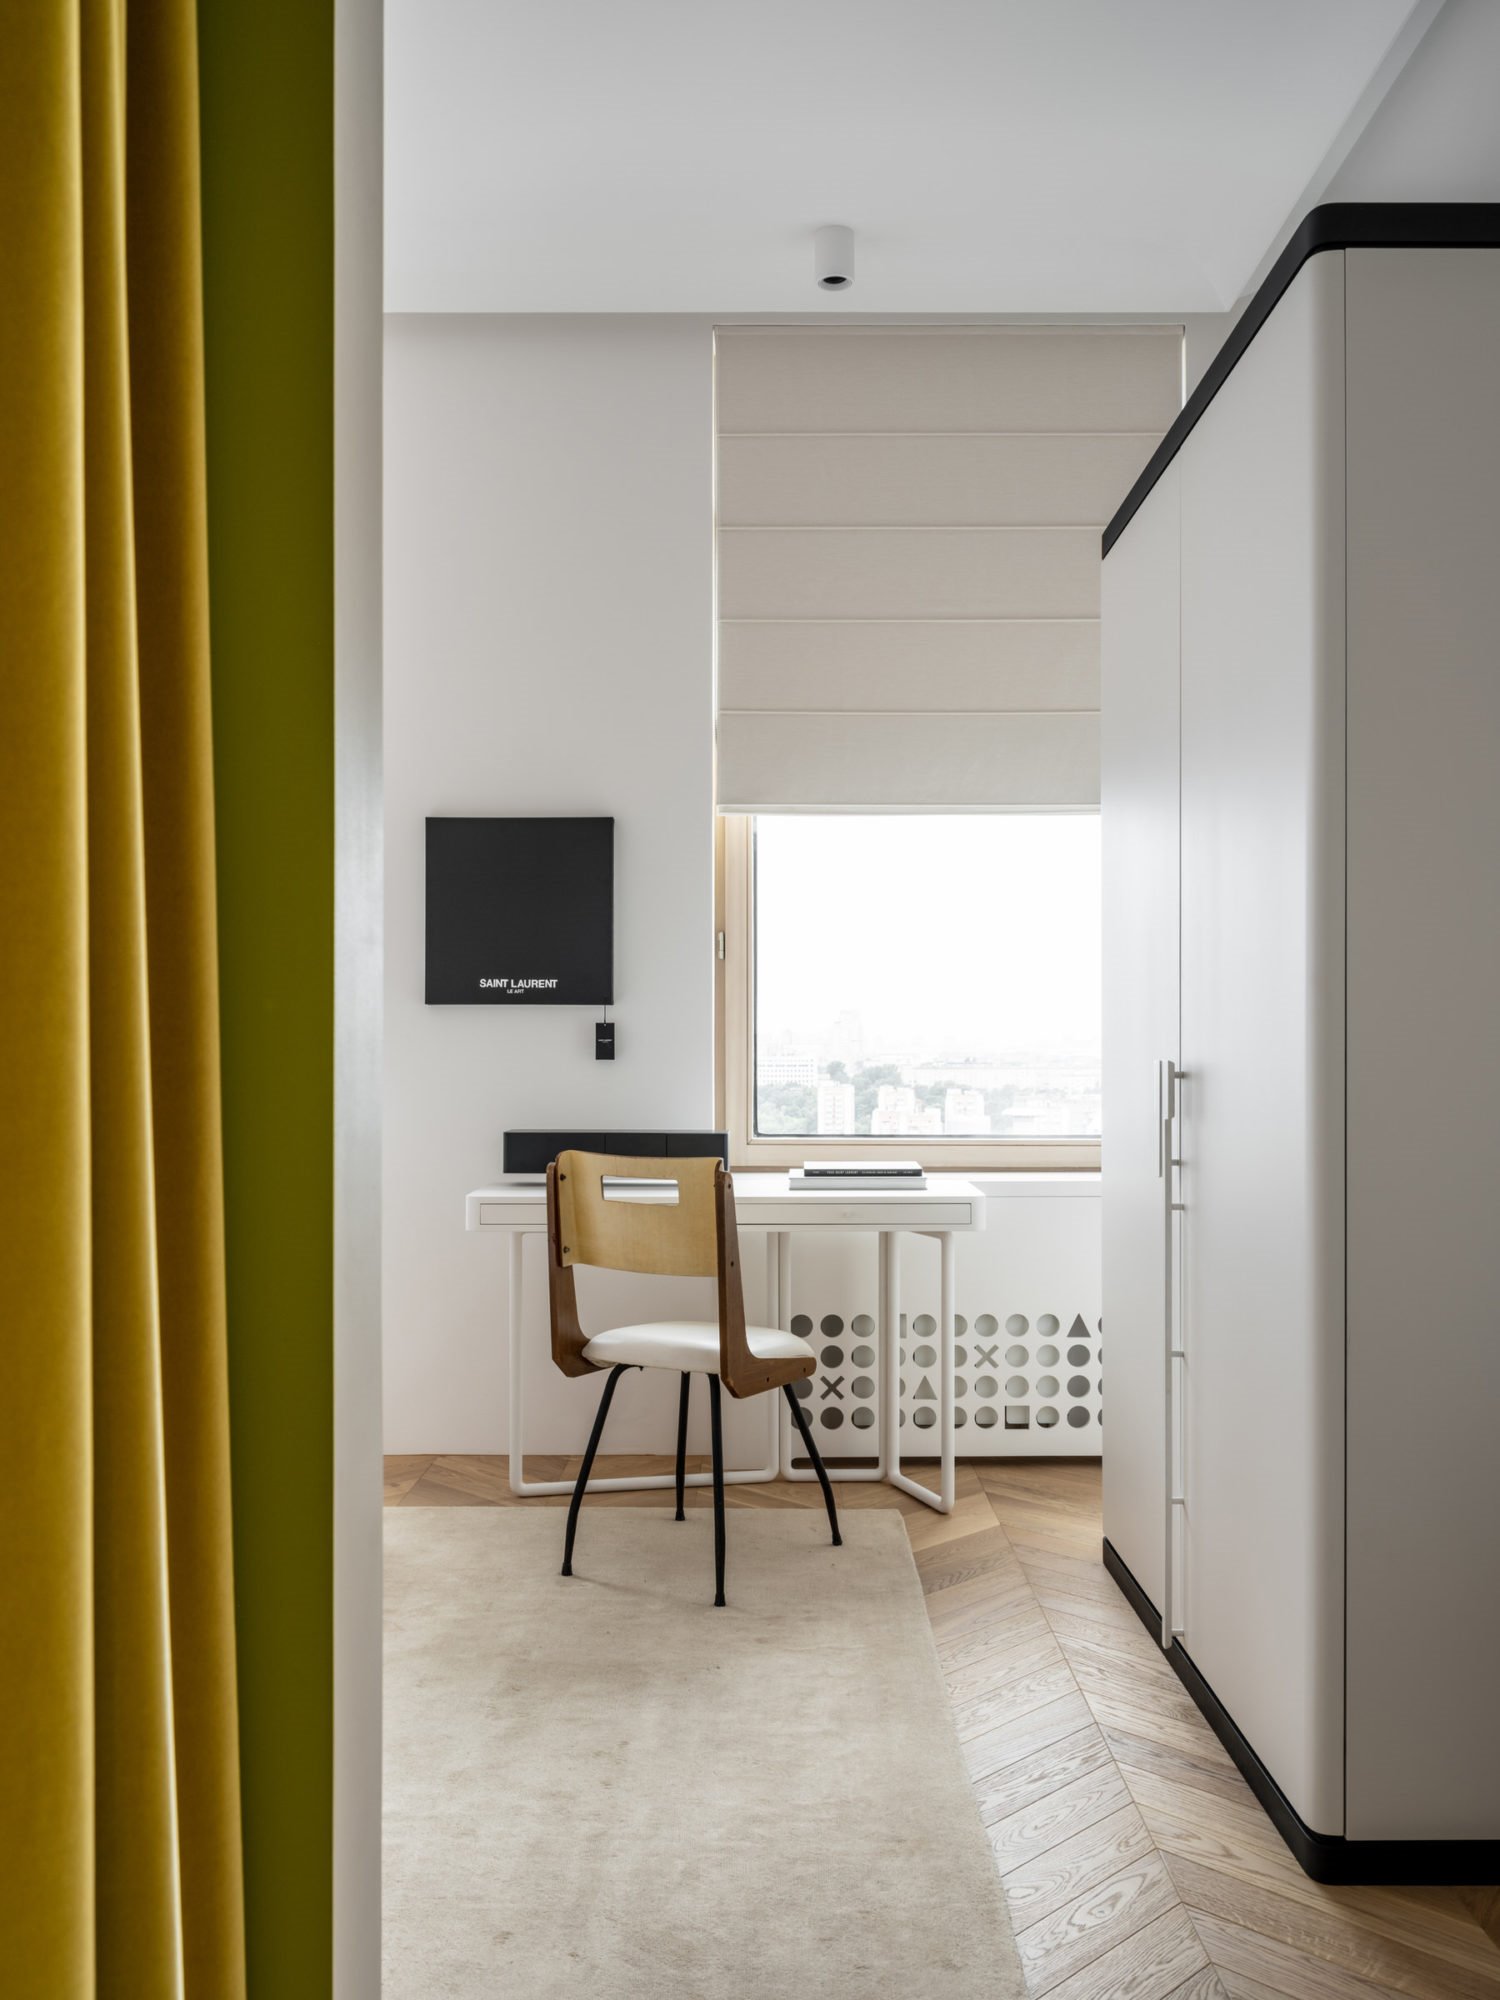 Piso en moscu despacho con cortinas de color amarillo